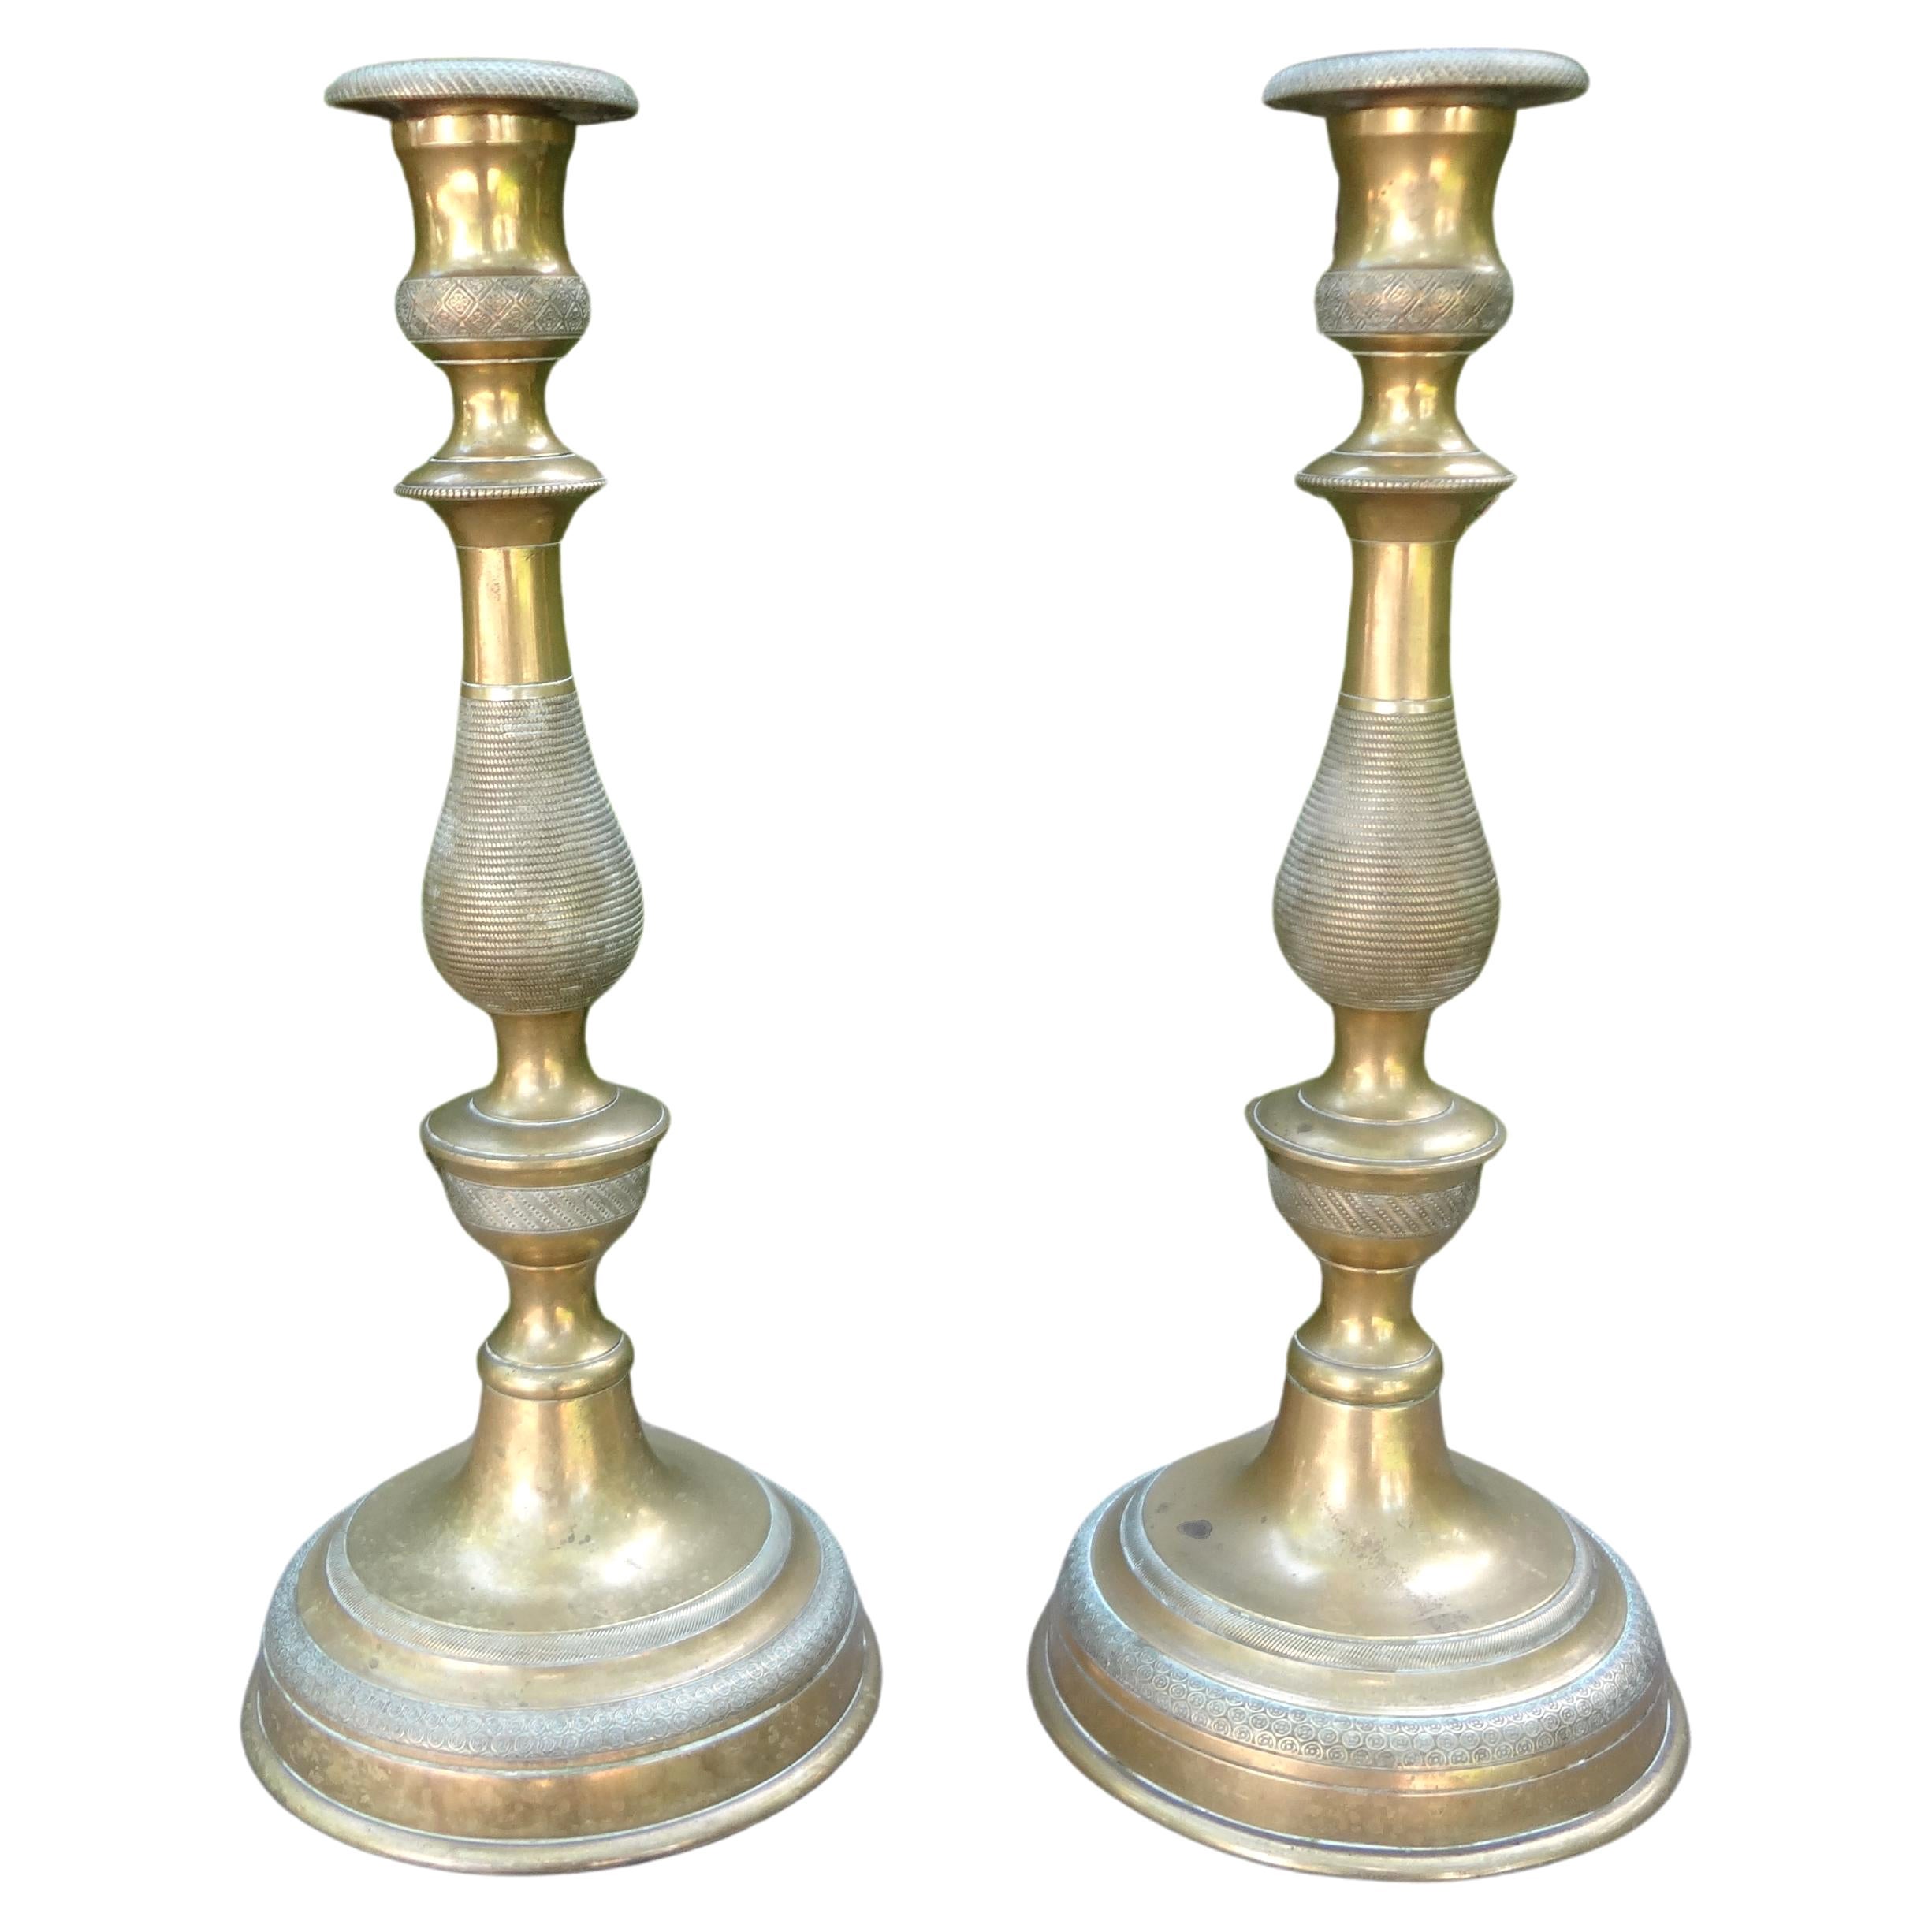 Paire de chandeliers en bronze de style Louis XVI du XIXe siècle